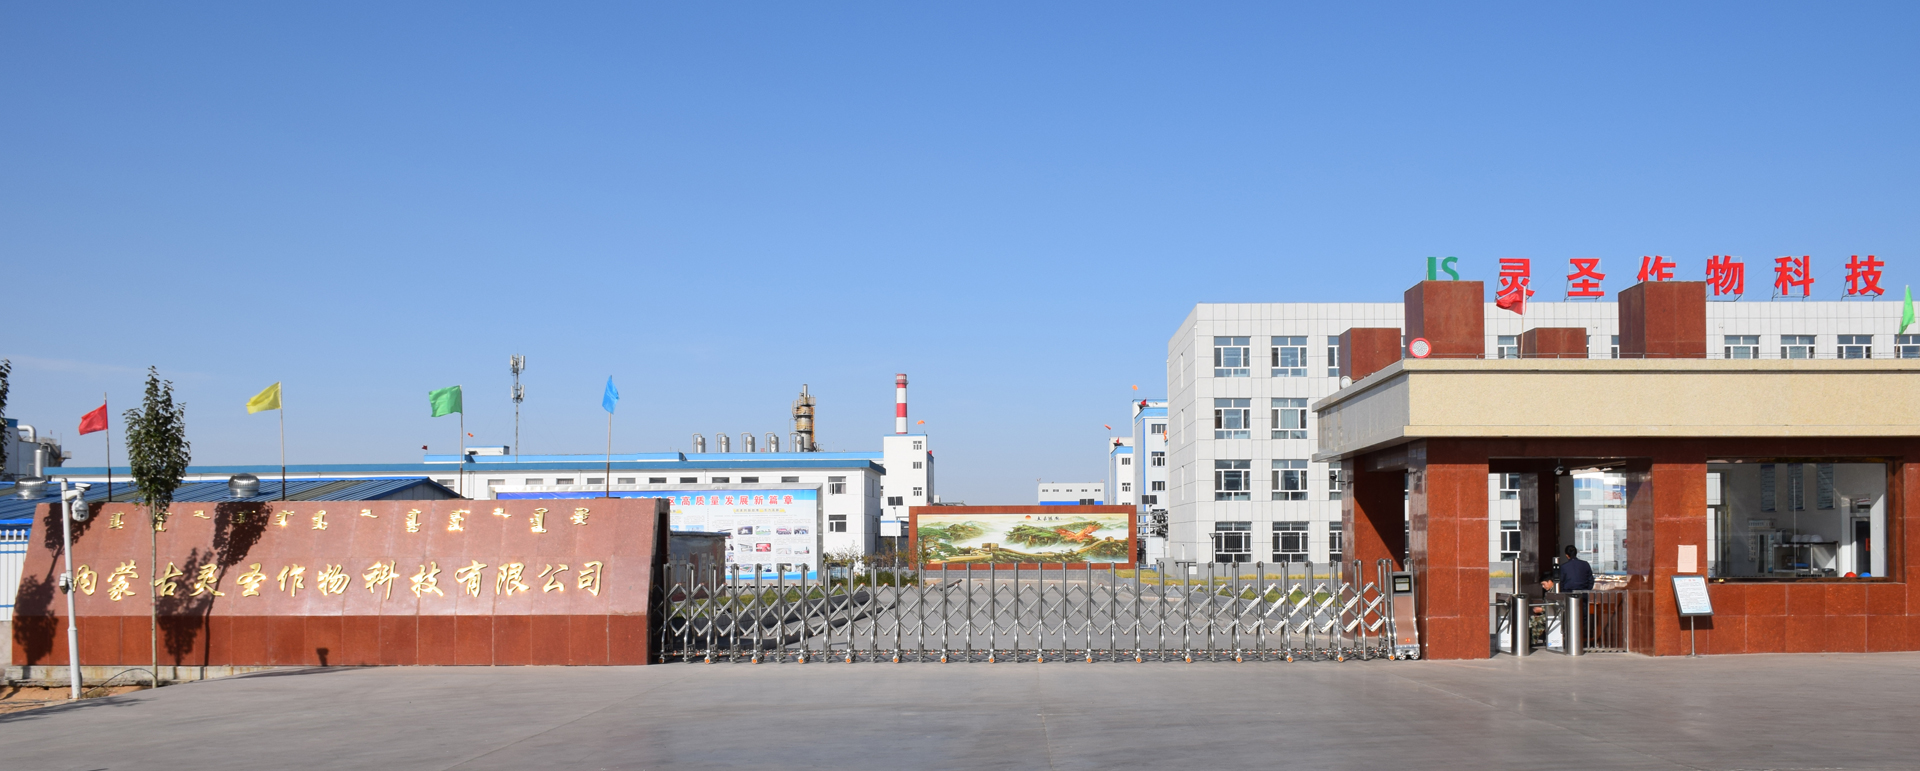 熱烈祝賀我公司榮獲內蒙古自治區五一勞動獎狀。